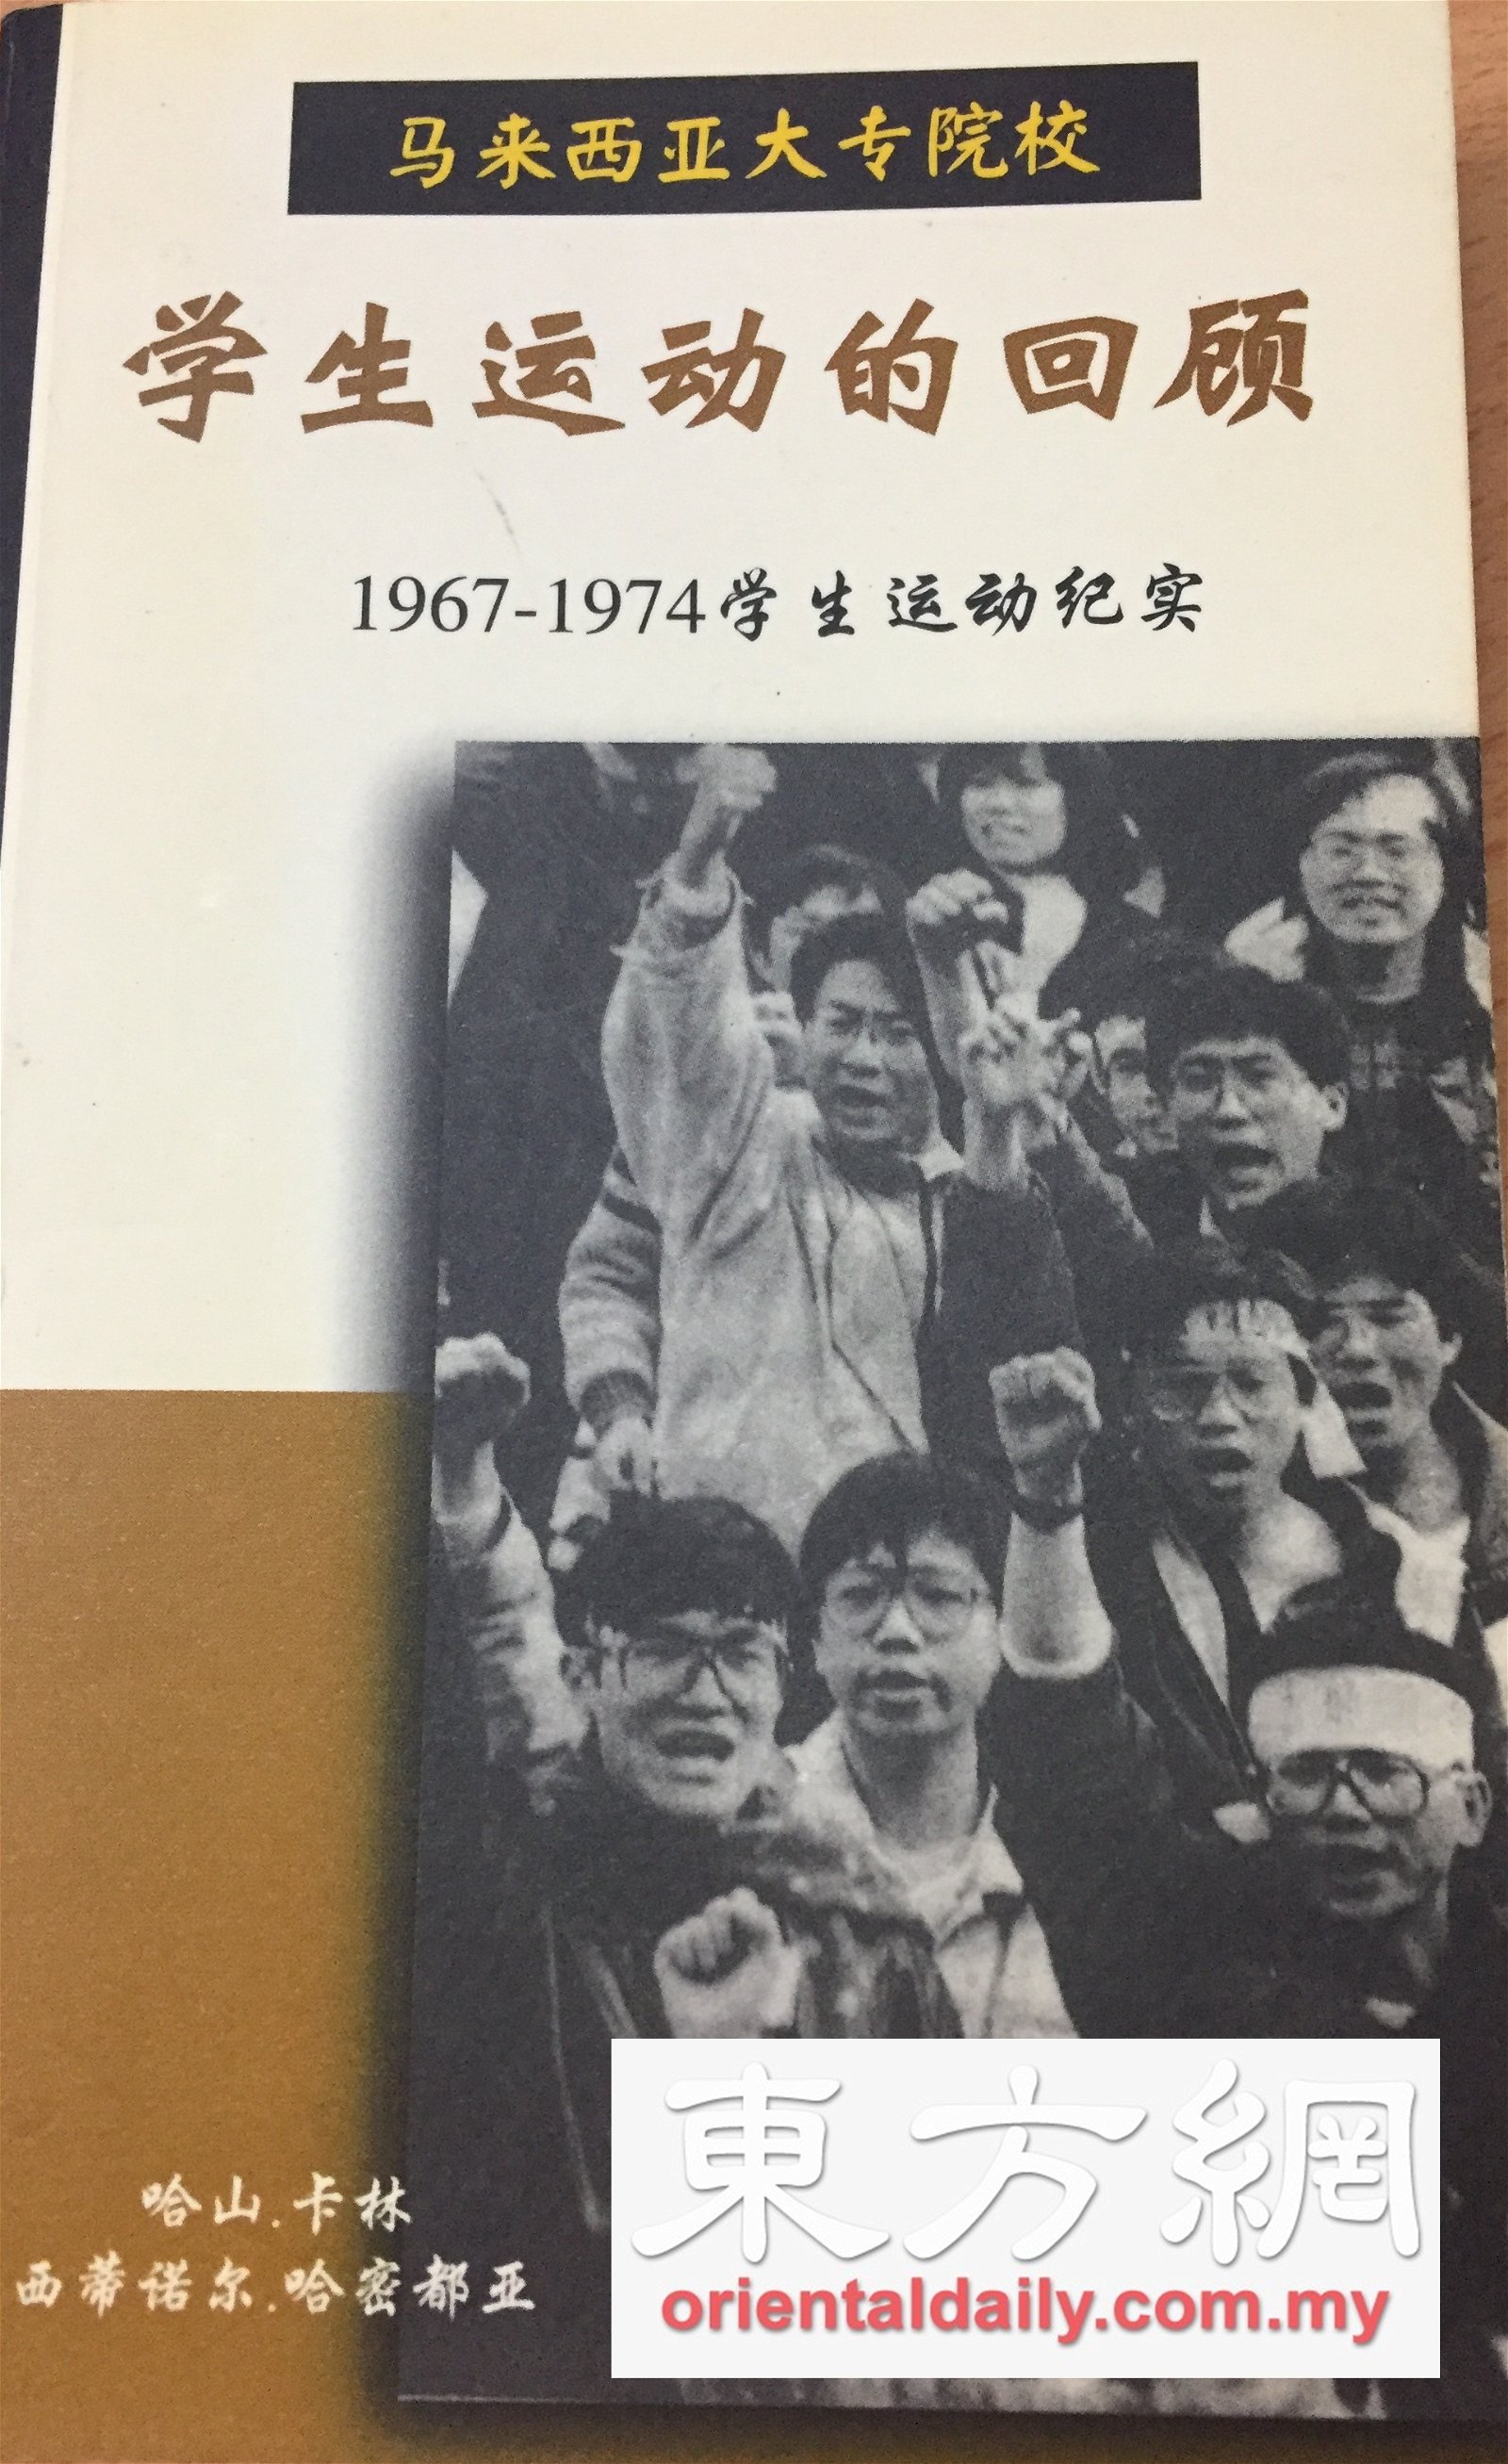 1970年代，学生运动风起云涌，学生积极投入社会和政治行动。